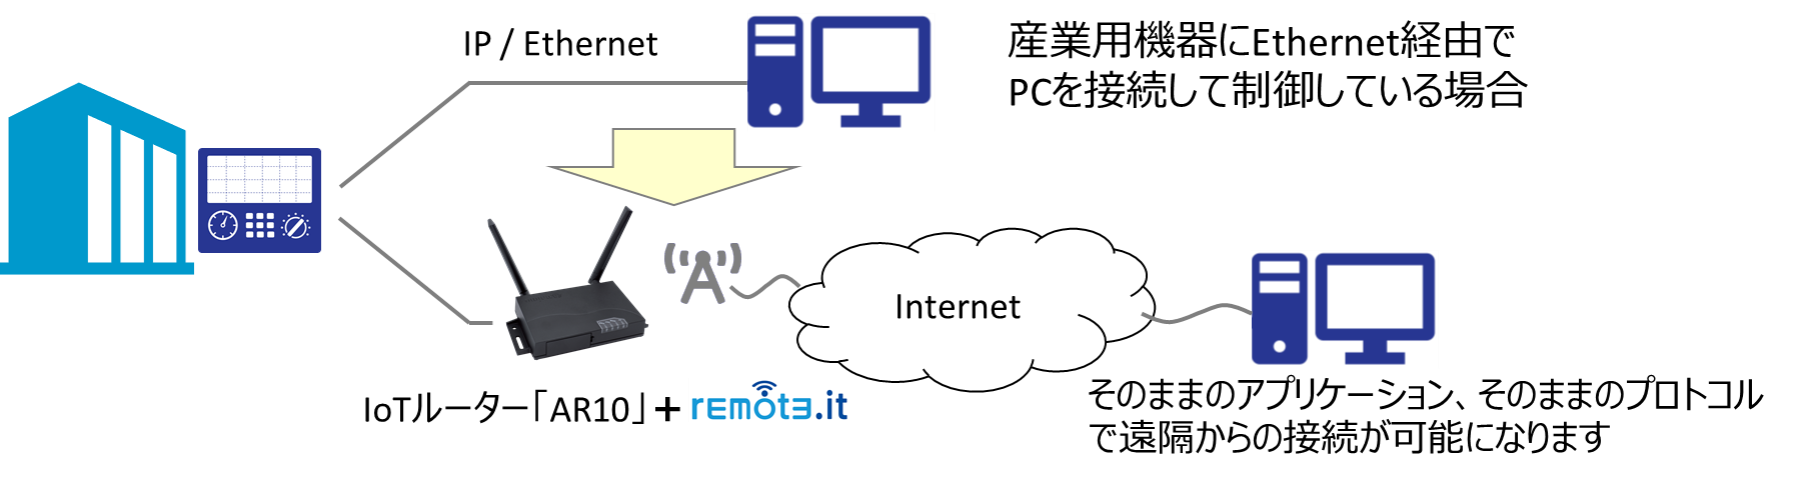 図2：IoTルーター amnimo Rシリーズ AR10により遠隔接続する際の構成図　remote.it/デバイス管理システム